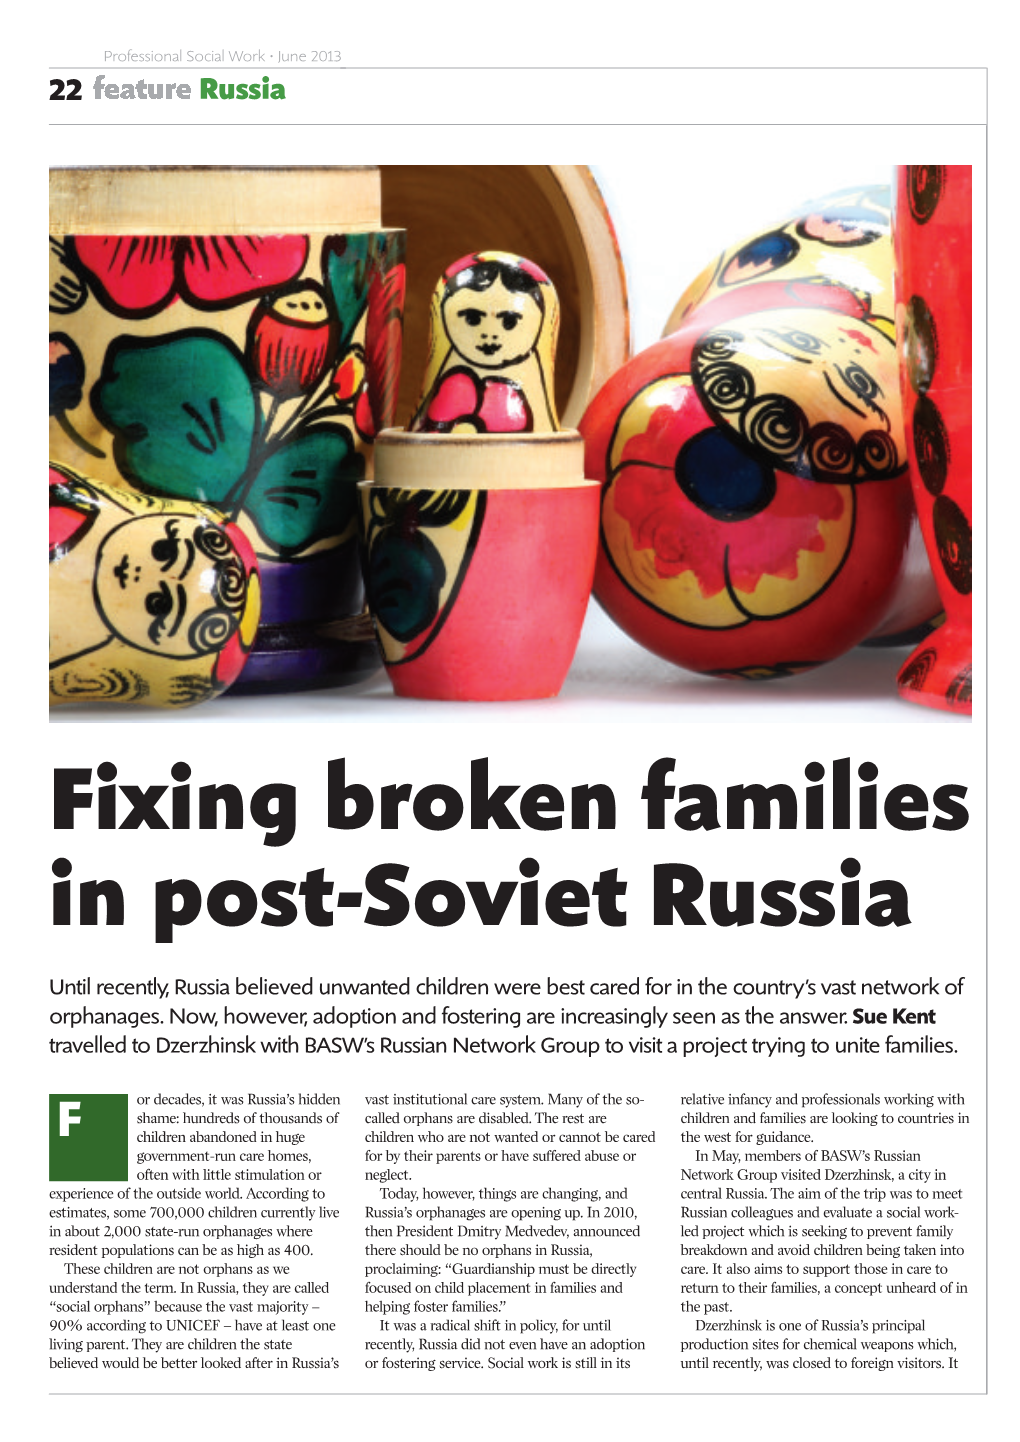 Fixing Broken Families in Post-Soviet Russia